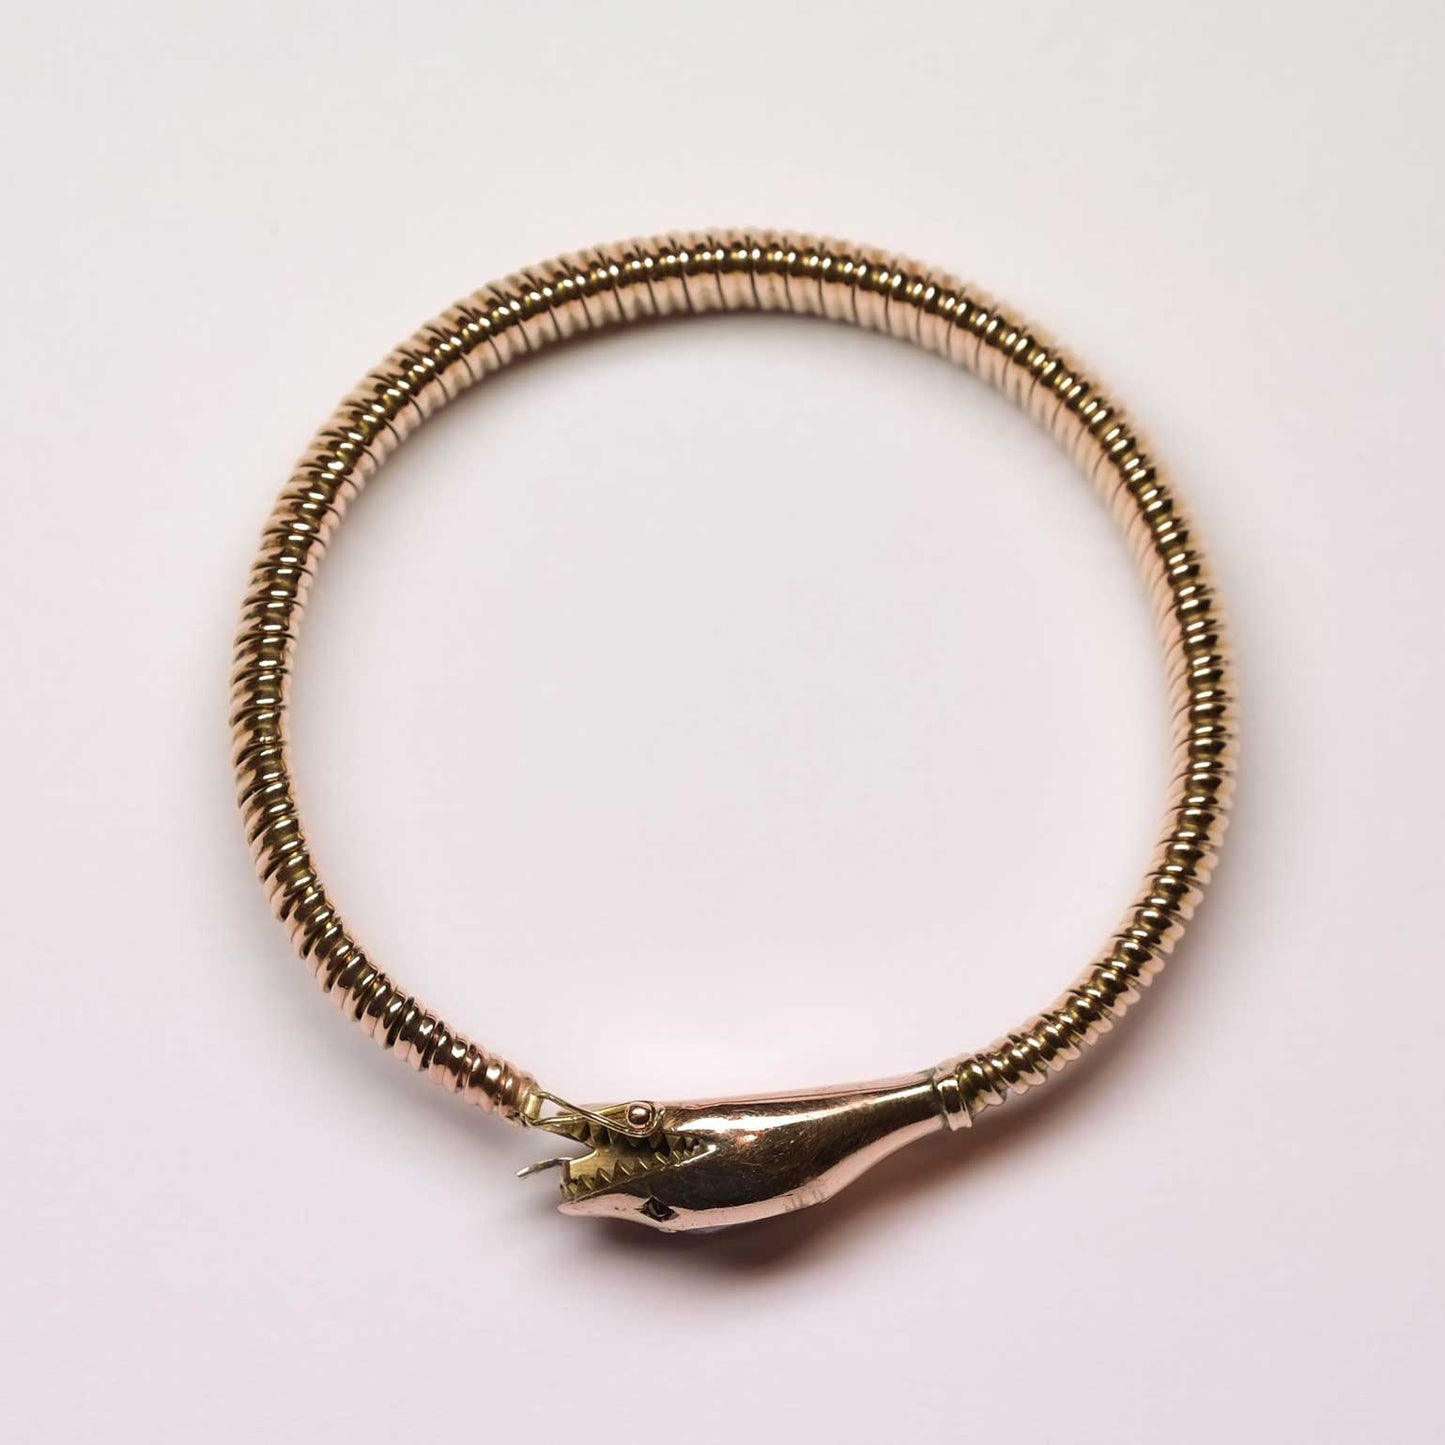 Antique rose gold Snake Bracelet